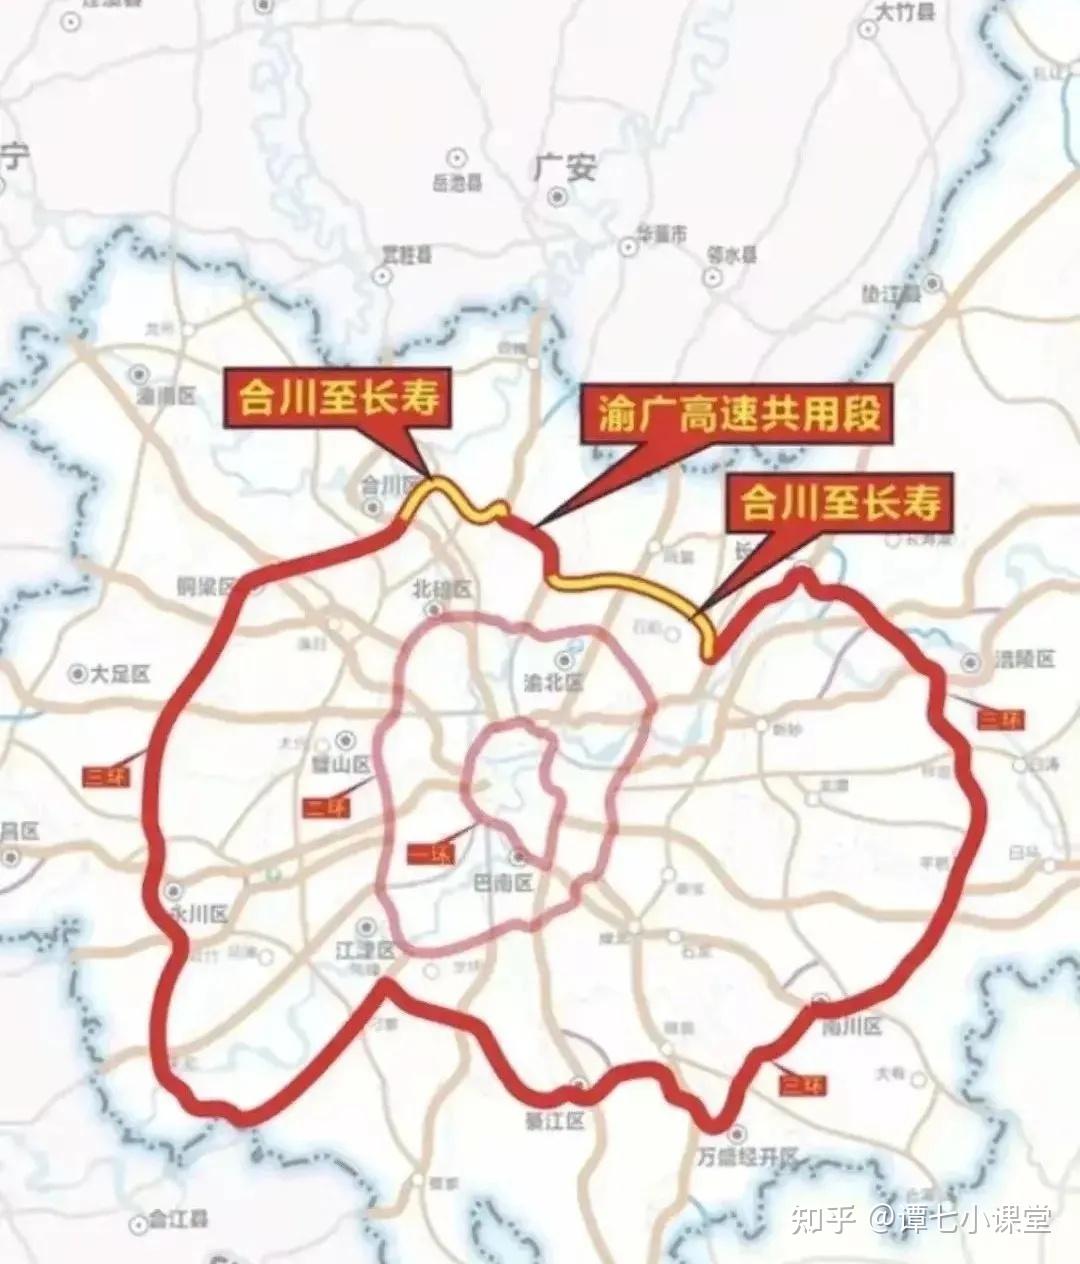 重庆驾到三环通车四环规划就来啦这些地方四环都要经过